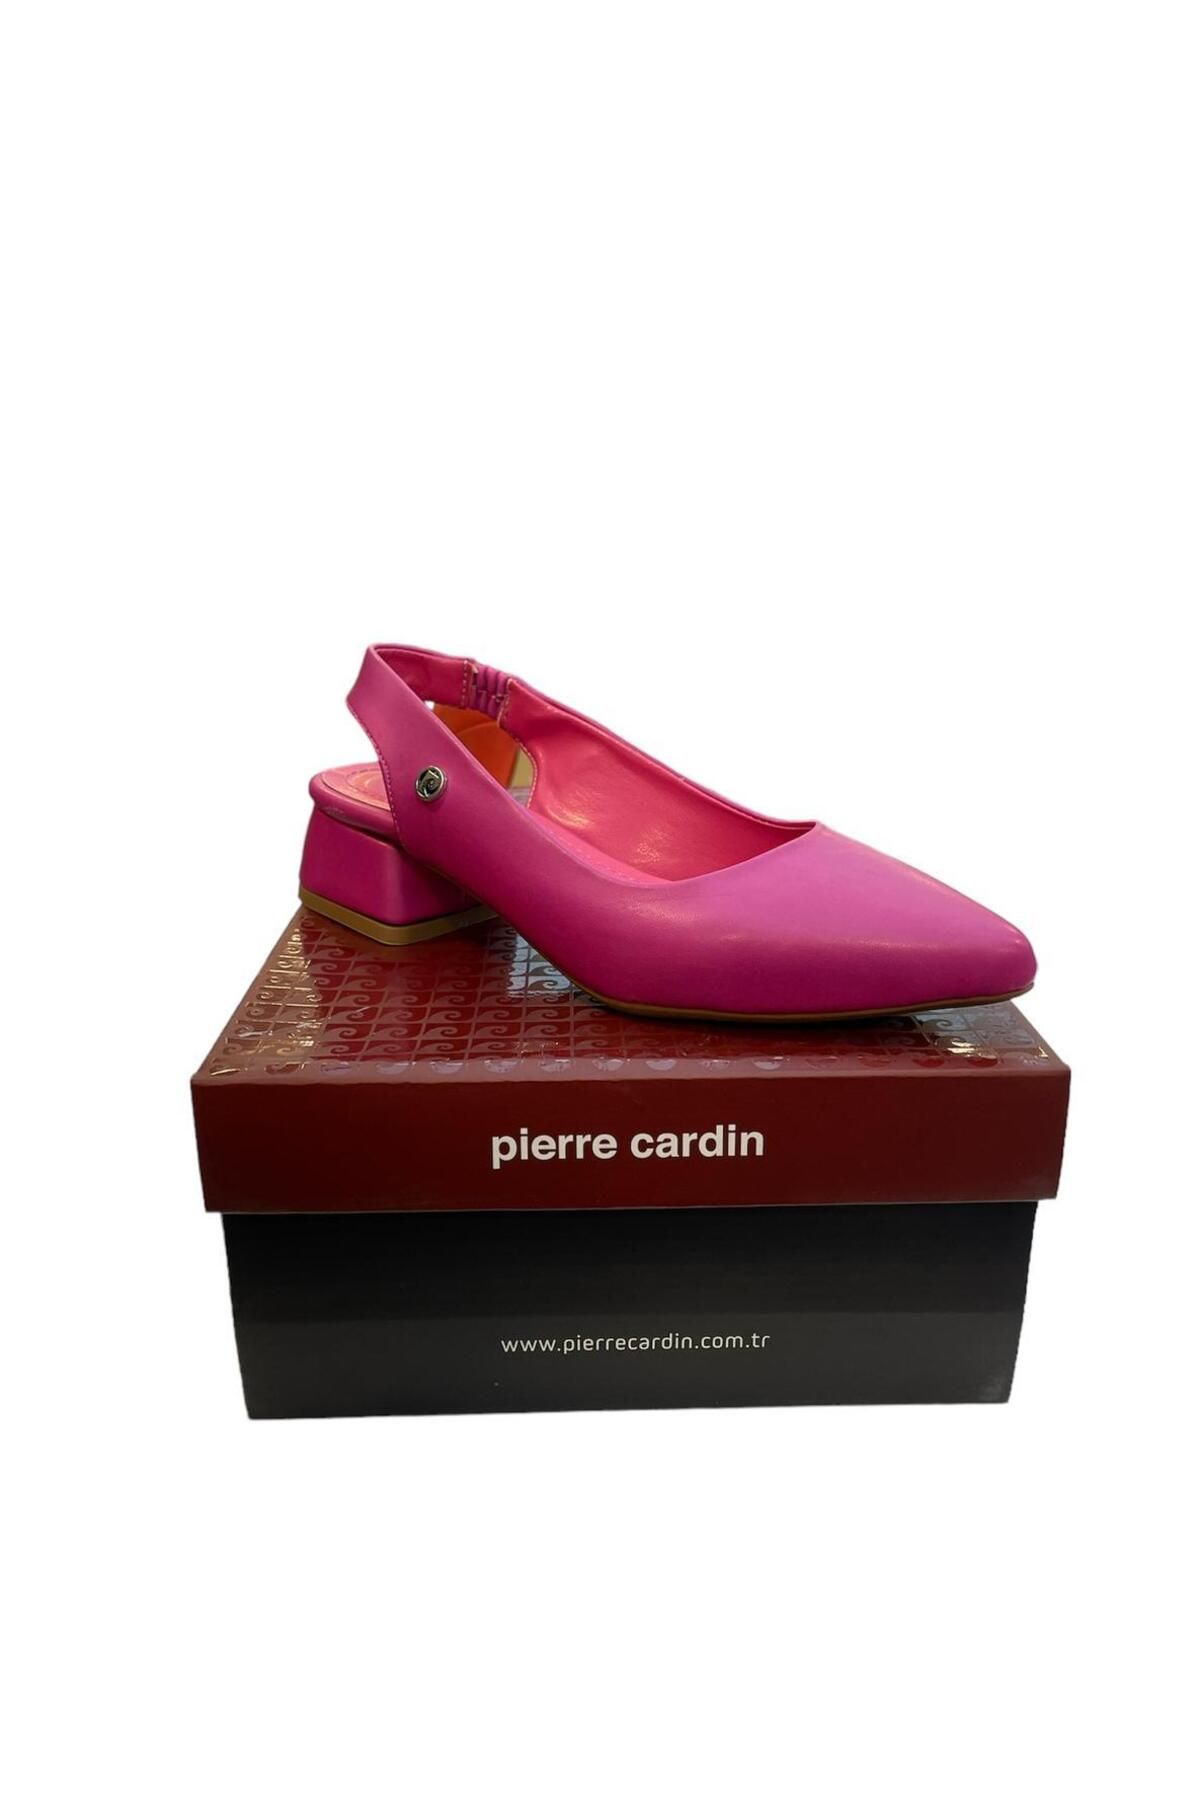 Pierre Cardin Fuşya Topuklu Ayakkabı